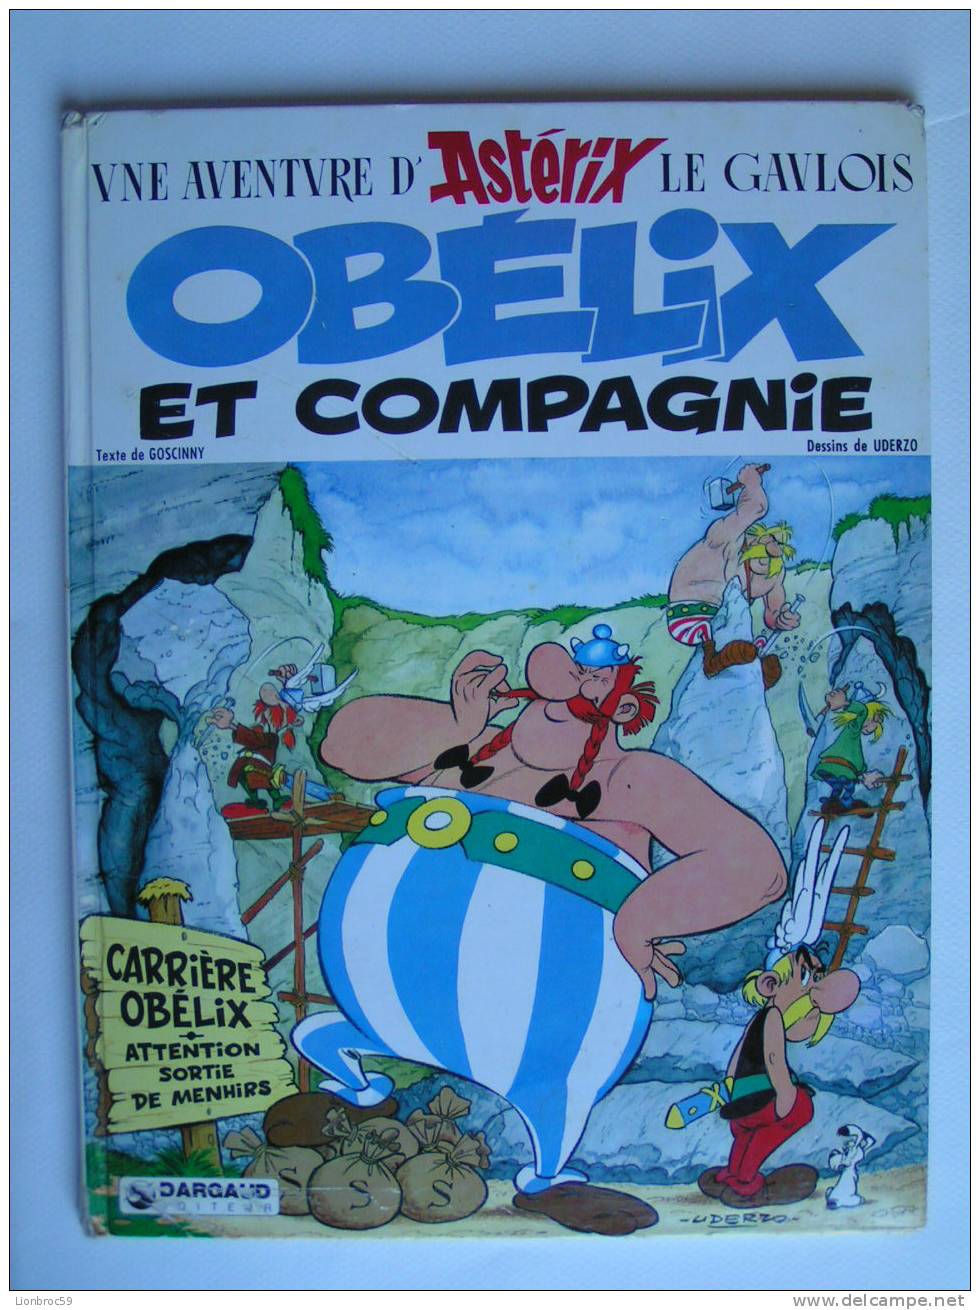 AVENTURES D' ASTERIX LE GAULOIS - OBELIX ET COMPAGNIE 1980 UDERZO Texte De GOSCINNY - Astérix